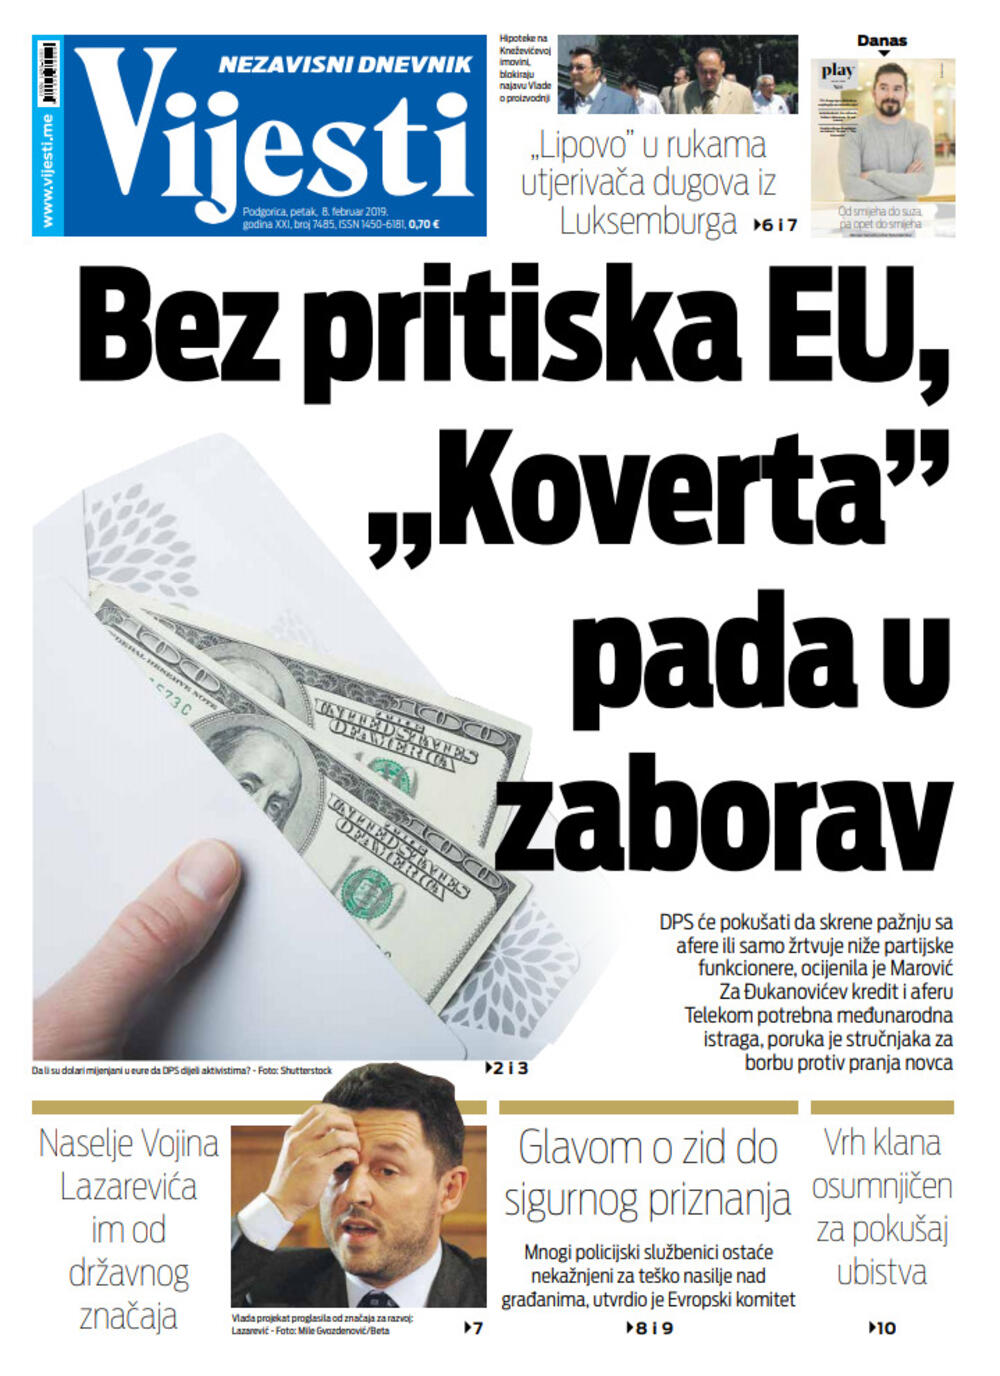 Naslovna strana "Vijesti" za 8. februar, Foto: Vijesti